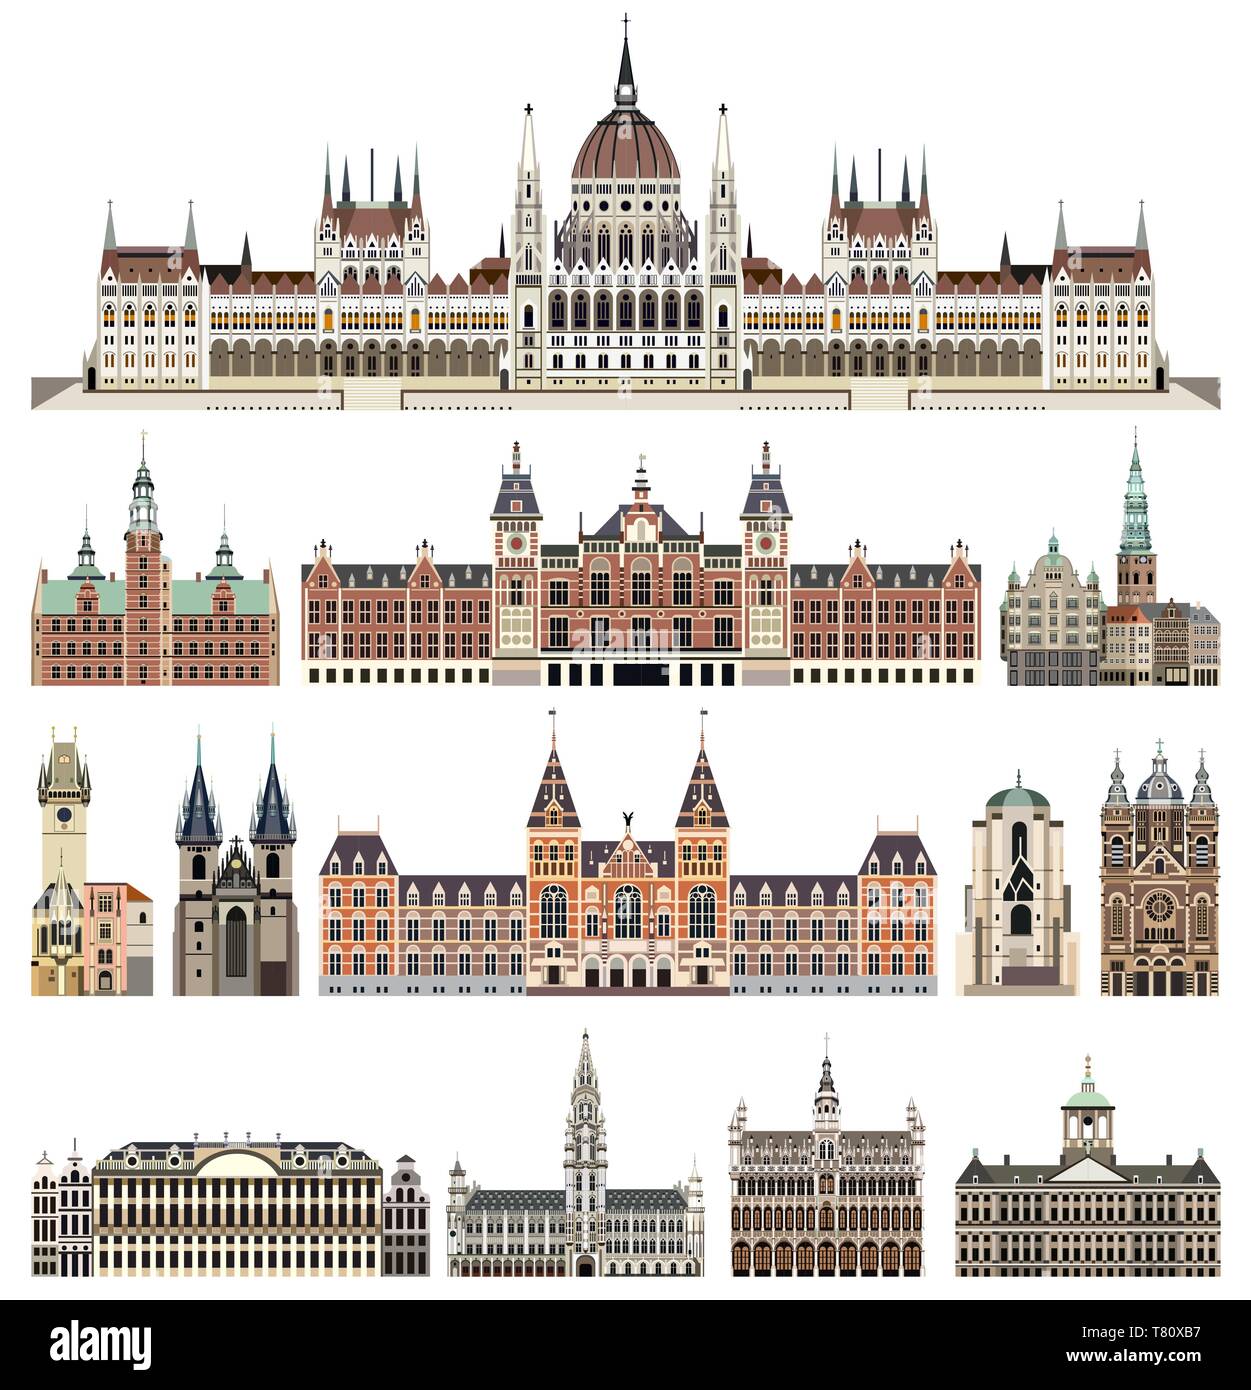 Vektor einrichten von isolierten Kathedralen, Paläste, Häuser, Gebäude, und skylines Elemente anderer Städte Straße Stock Vektor